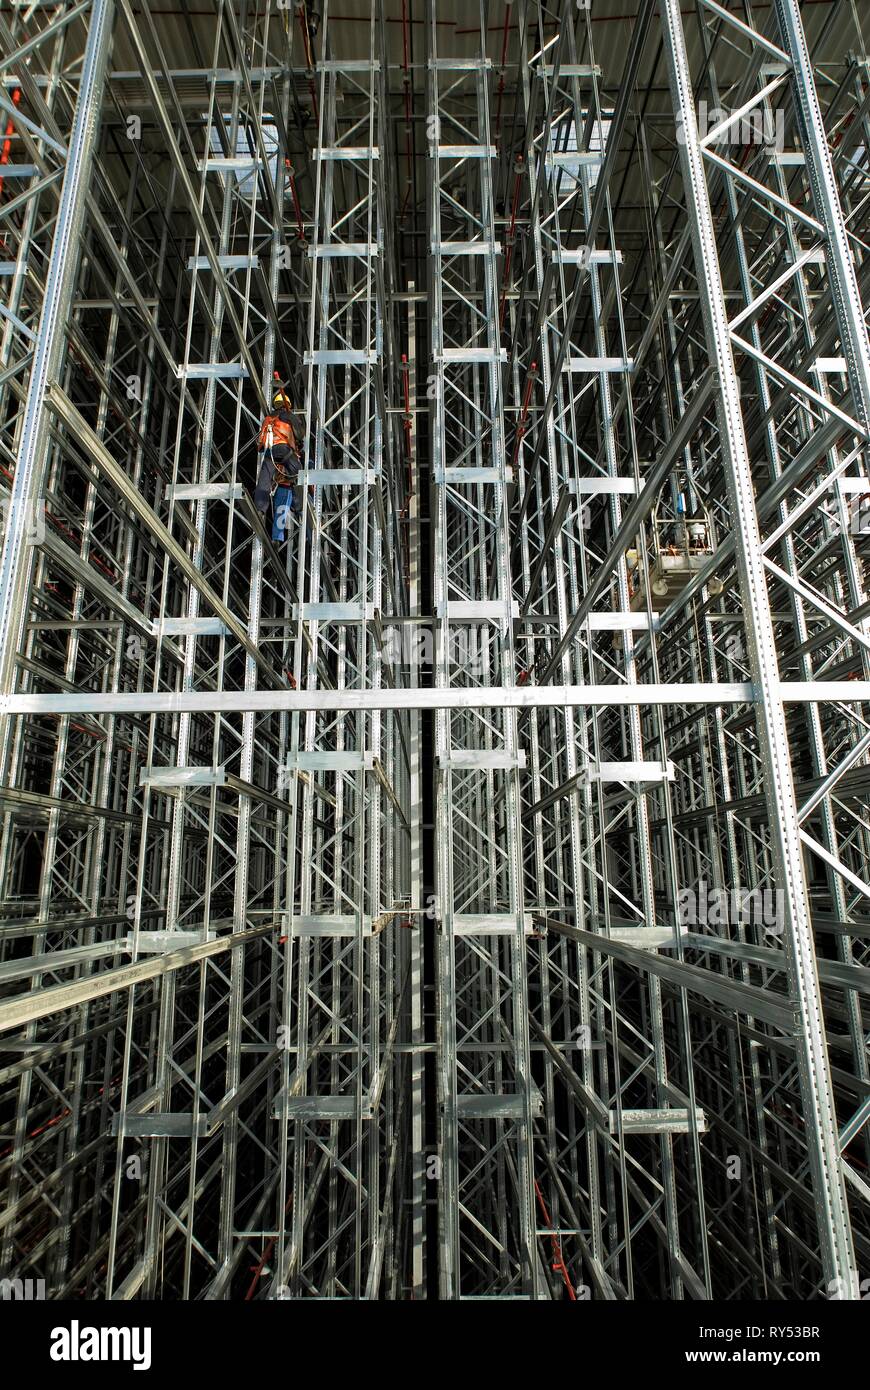 In einer Hochregallandschaft arbeitet ein Bauarbeiter und baut die Hochregale auf. Stock Photo